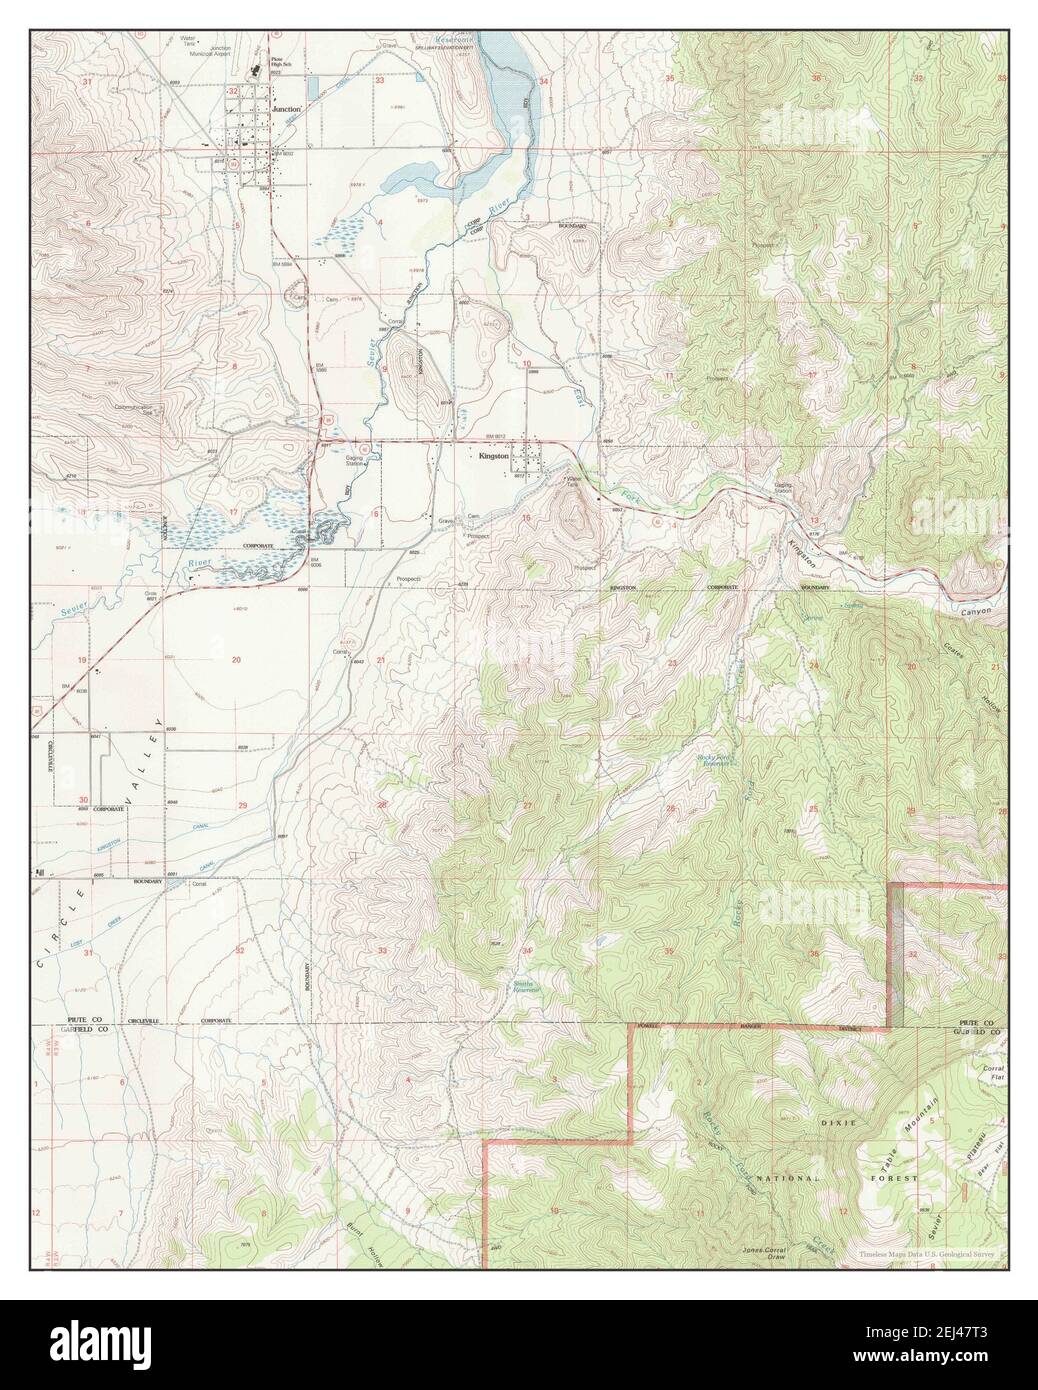 Junction, Utah, Karte 2002, 1:24000, Vereinigte Staaten von Amerika von Timeless Maps, Daten U.S. Geological Survey Stockfoto